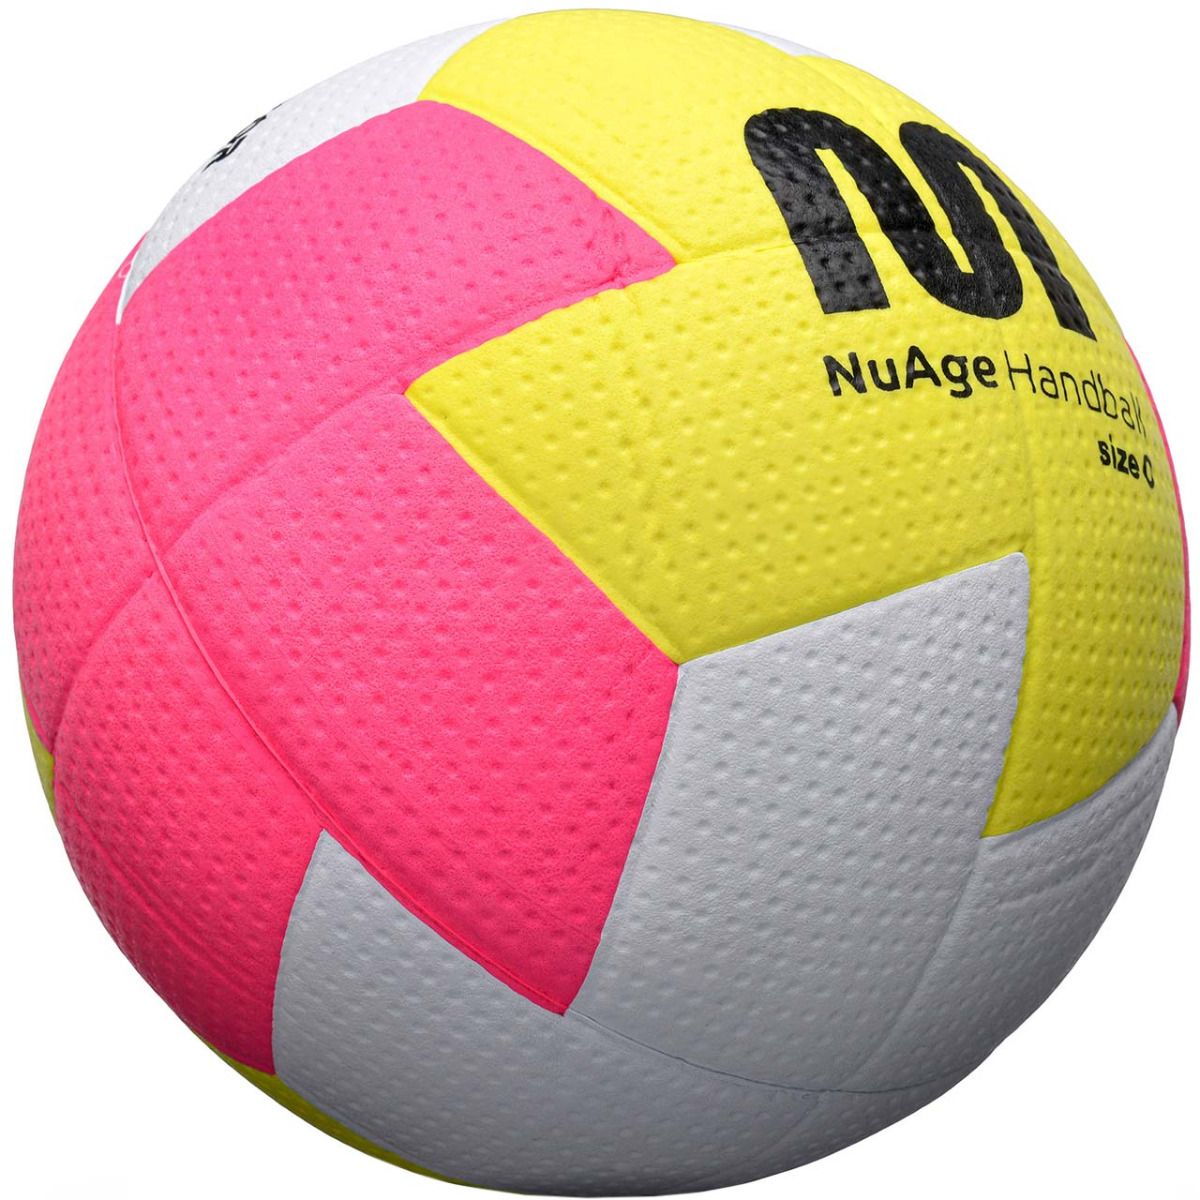 Meteor Handball Nuage Mini 0 16695